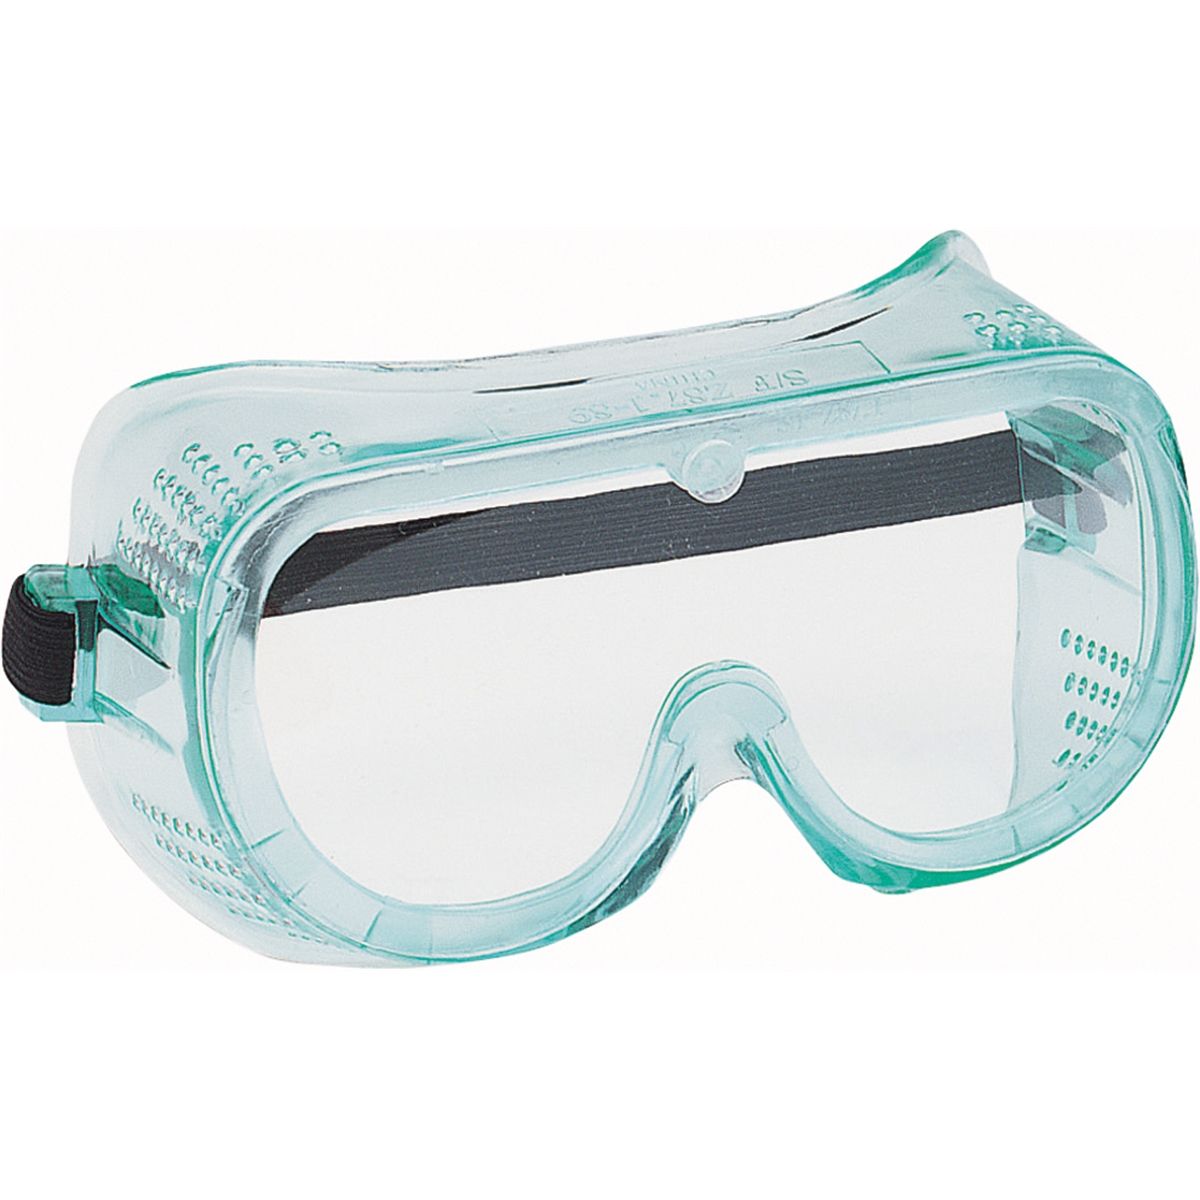 Специальные защитные очки. Очки защитные прозрачные Clear Opti. Очки защитные прозрачные 74705. Jsg311-c очки защитные Pro Vision открытого типа. Очки защитные 3нд2 Адмирал РОСОМЗ 23231.